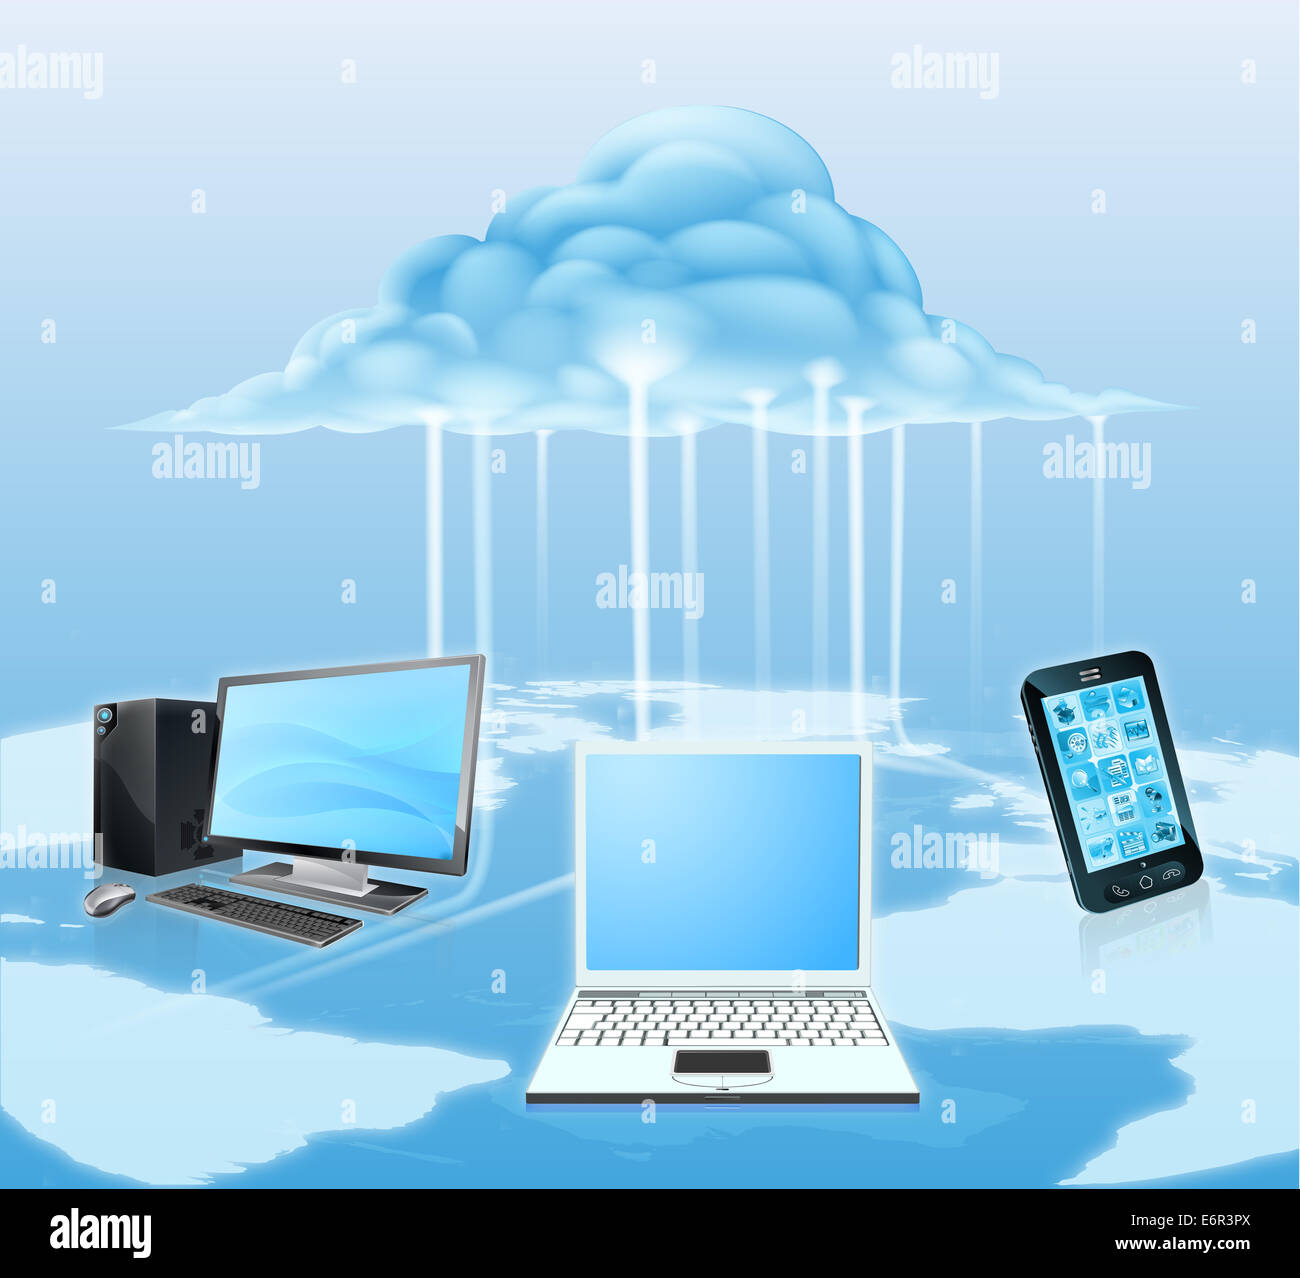 Illustrazione dei dispositivi multimediali come telefono mobile, laptop e computer desktop collegato al cloud. Concetto di tecnologia per il Foto Stock